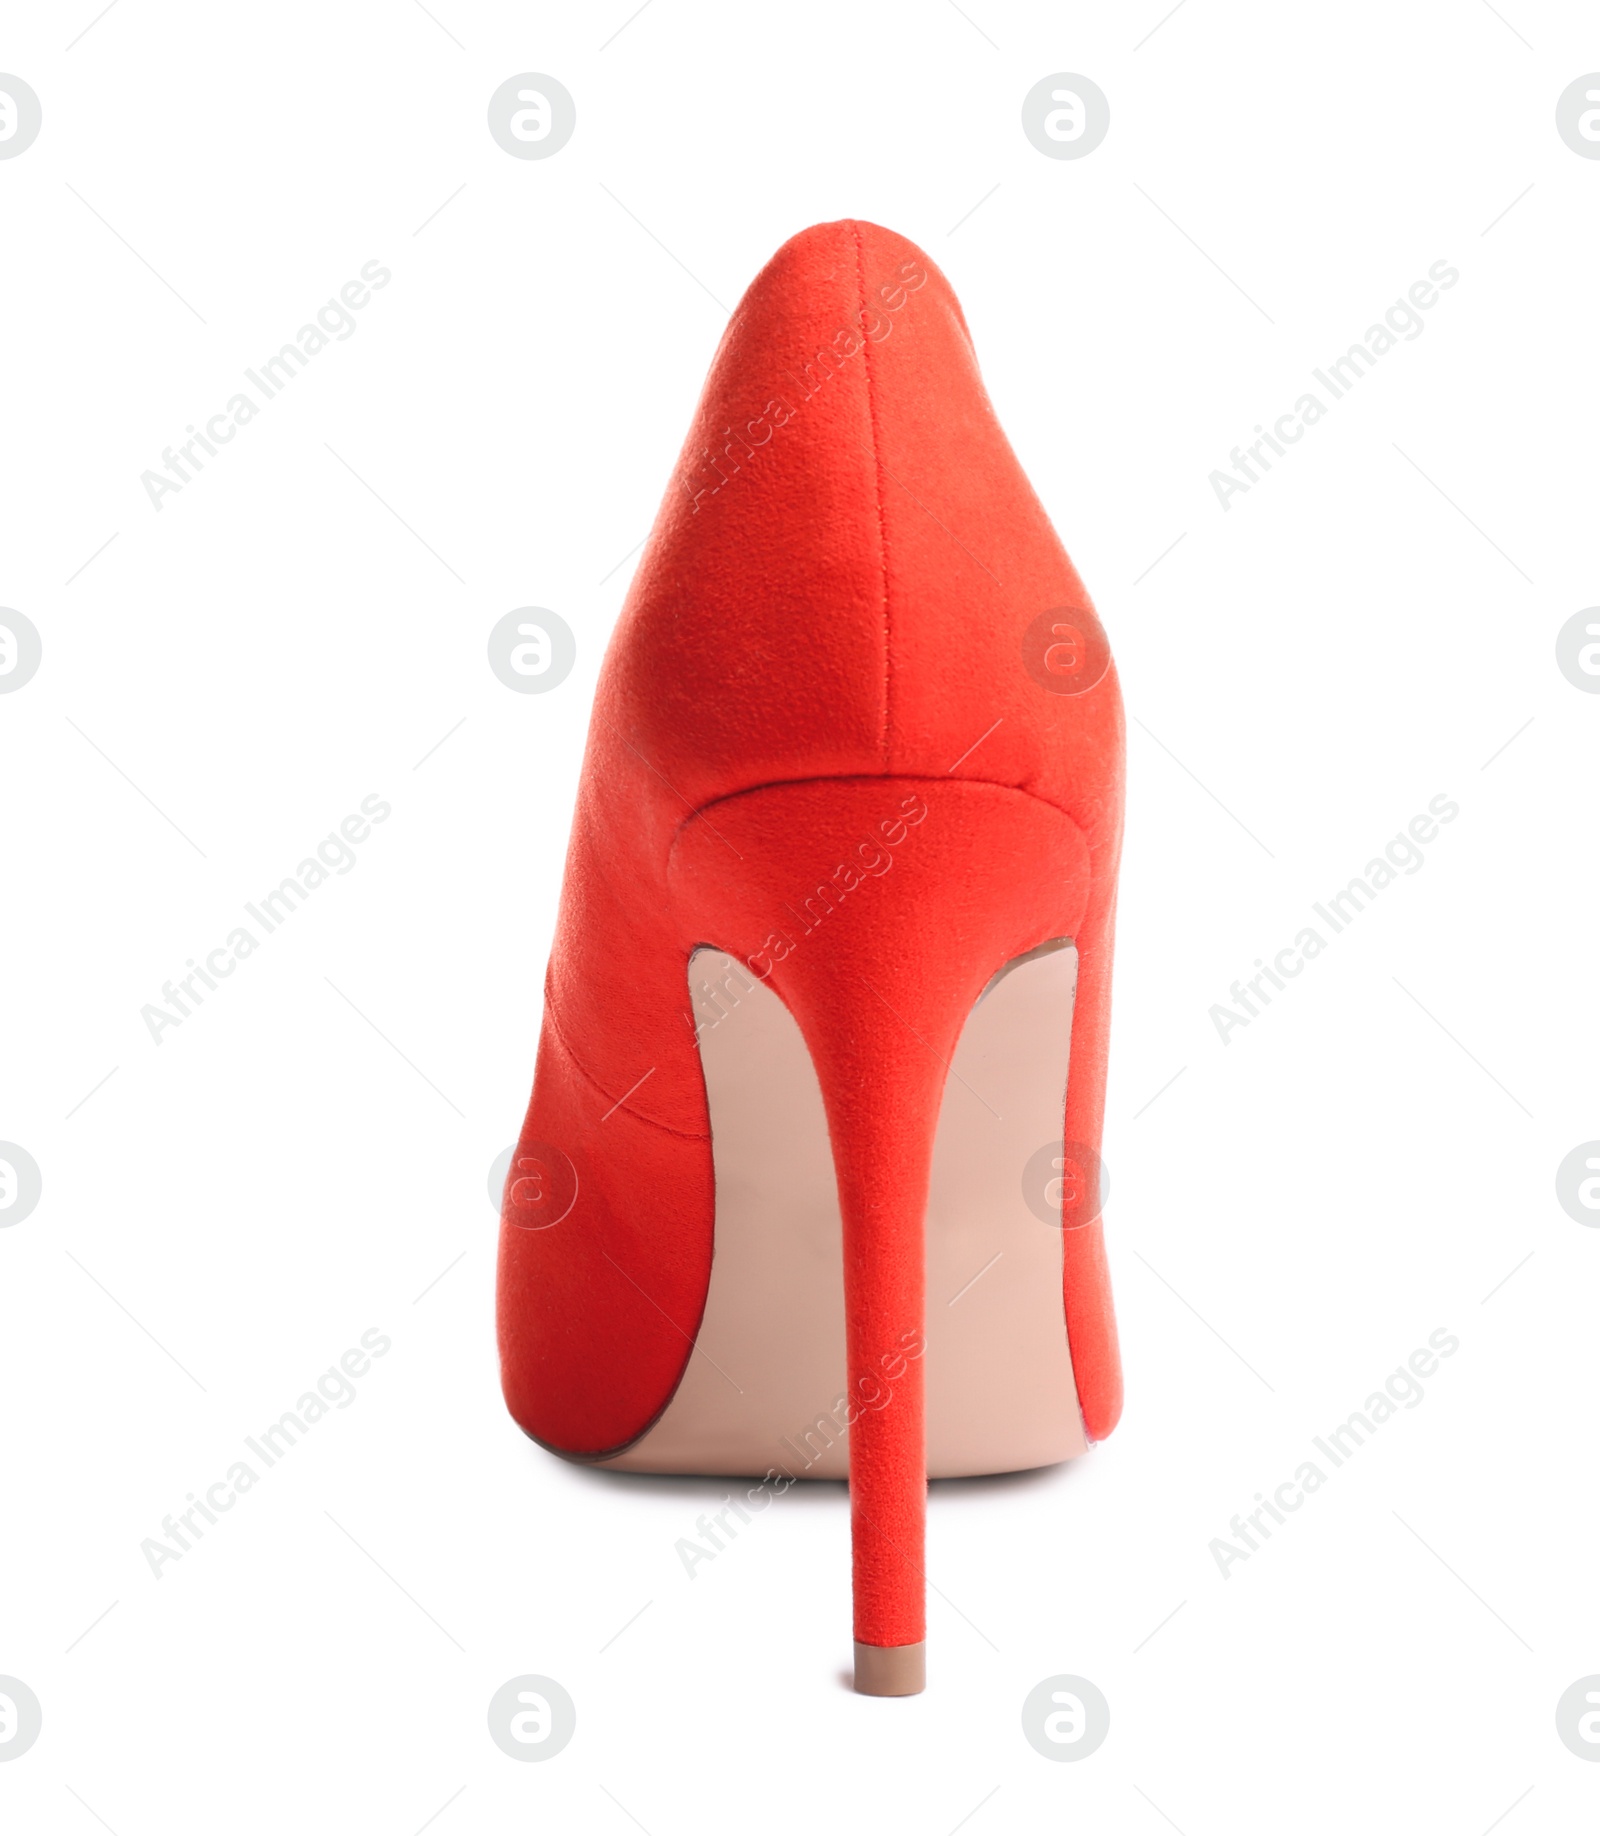 Photo of Stylish high heel shoe on white background